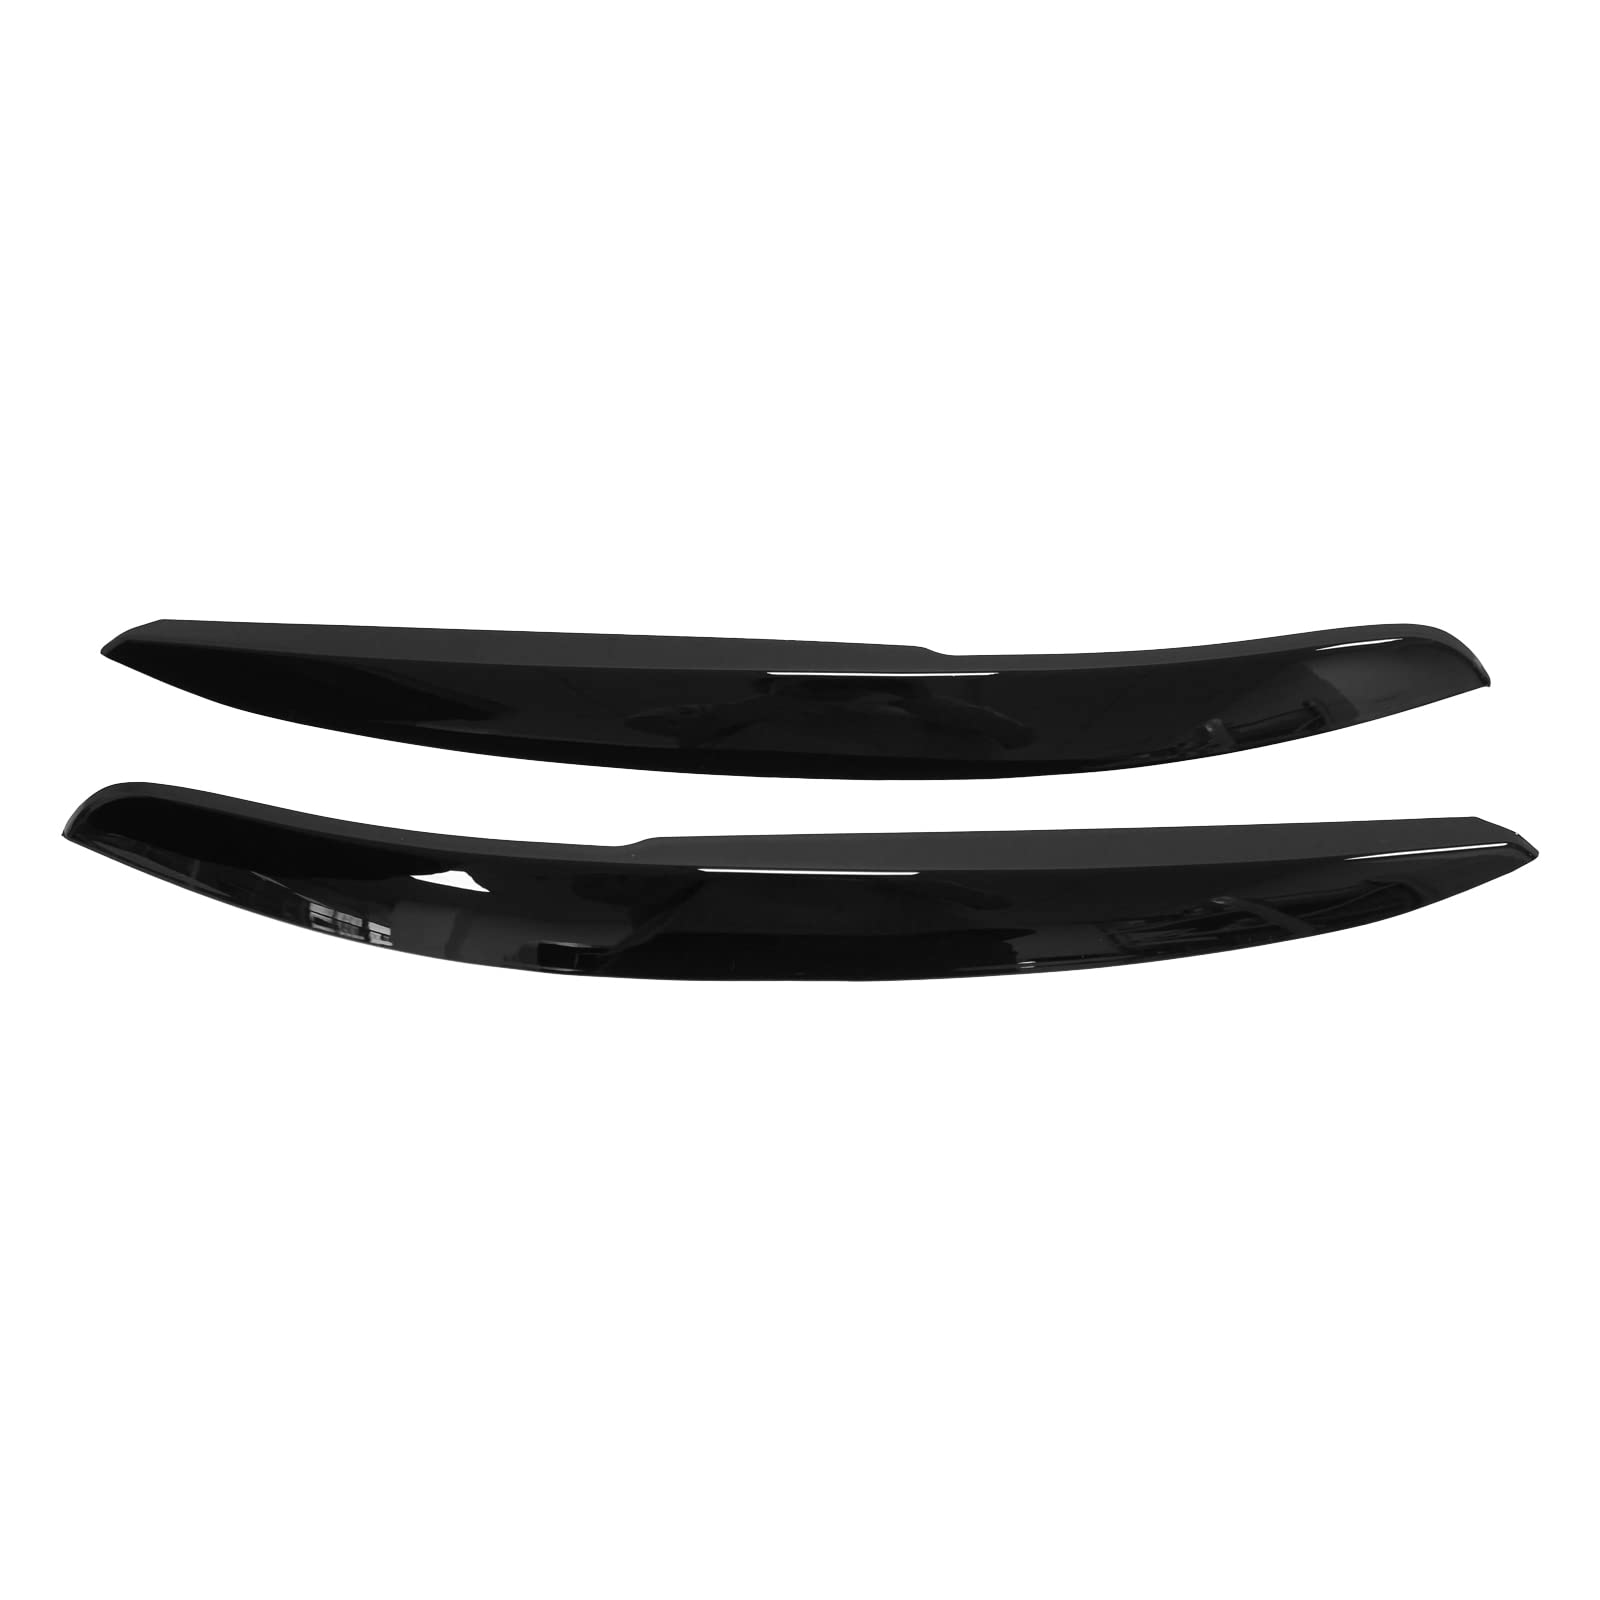 HouYeen Vordere linke und rechte Scheinwerfer-Augenbrauen Blenden Abdeckung glänzend schwarz für Polo Mk5 6C 6R 2011-2018 von HouYeen